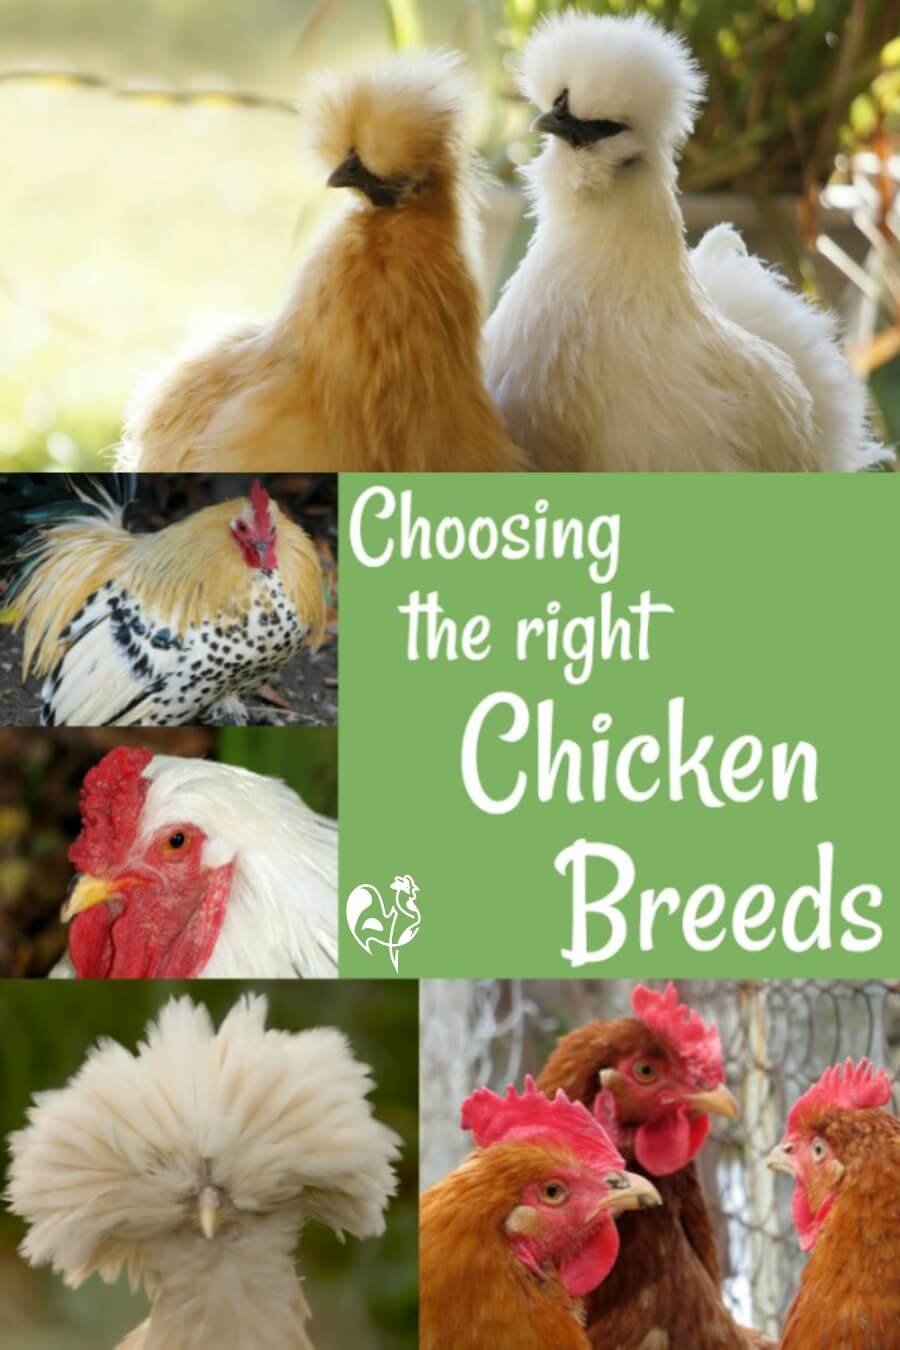 chicken breeds